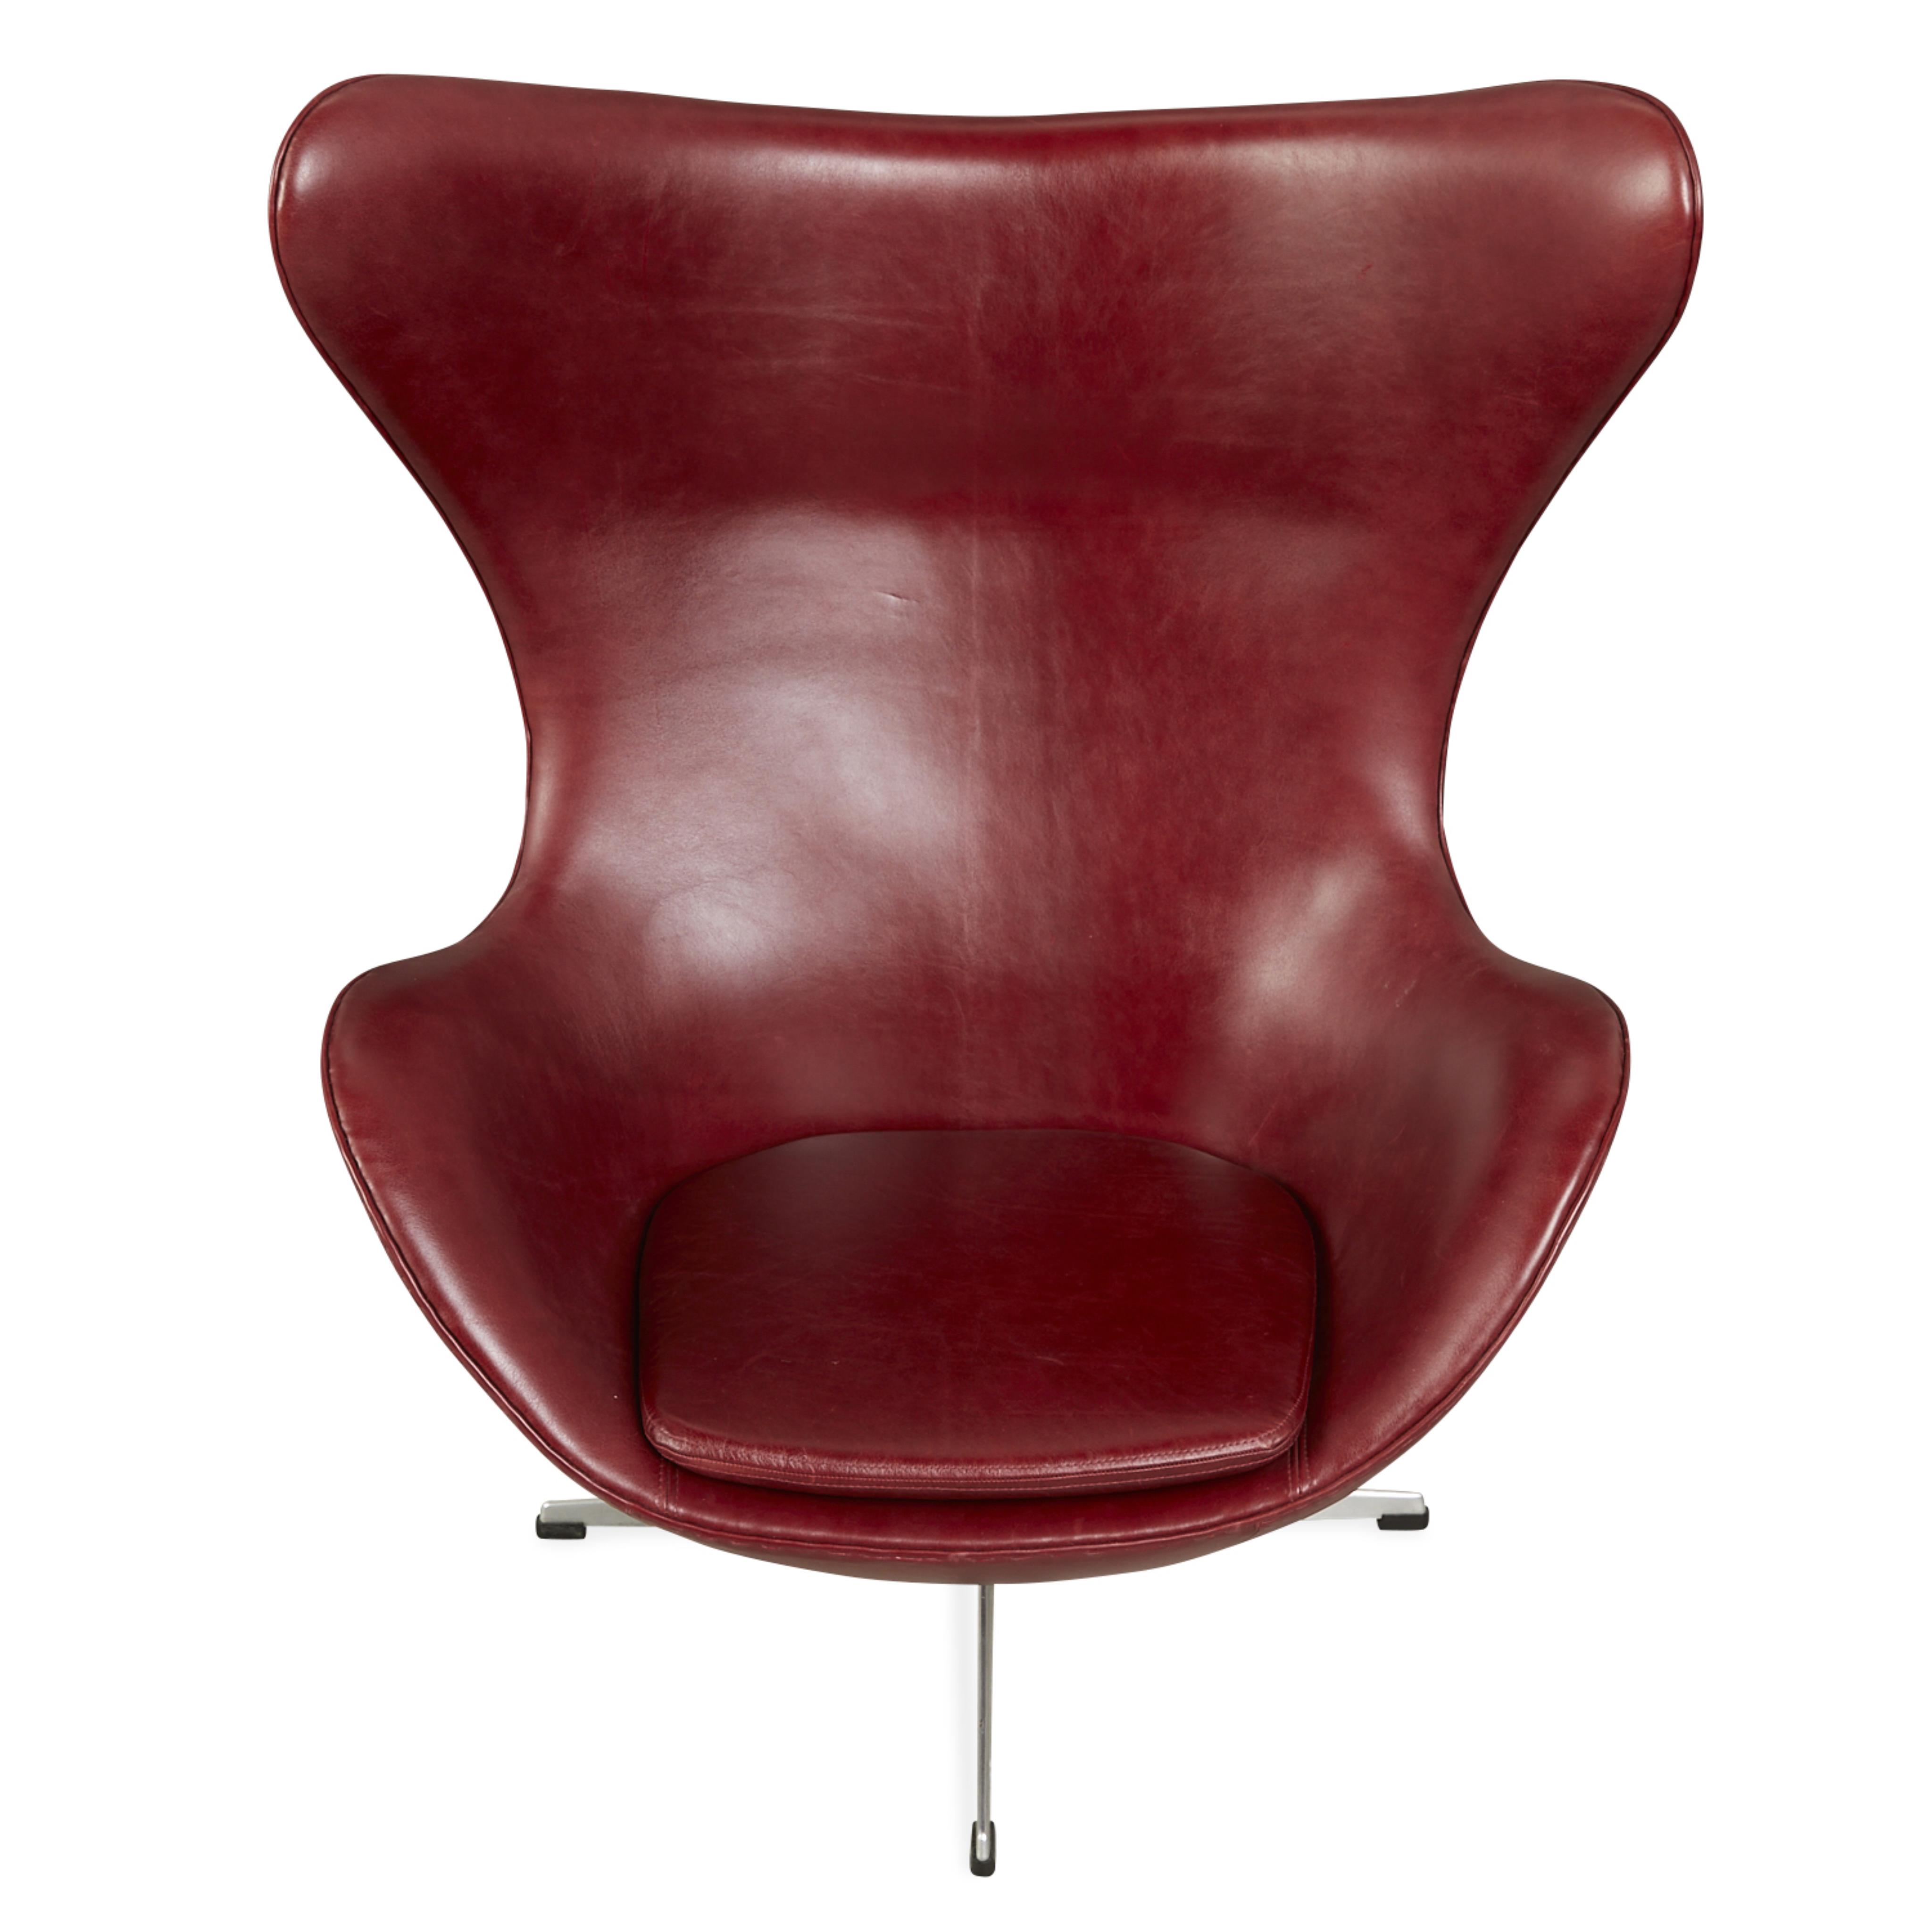 Arne Jacobsen for Hansen Leather Egg Chair 1964 - Image 9 of 17